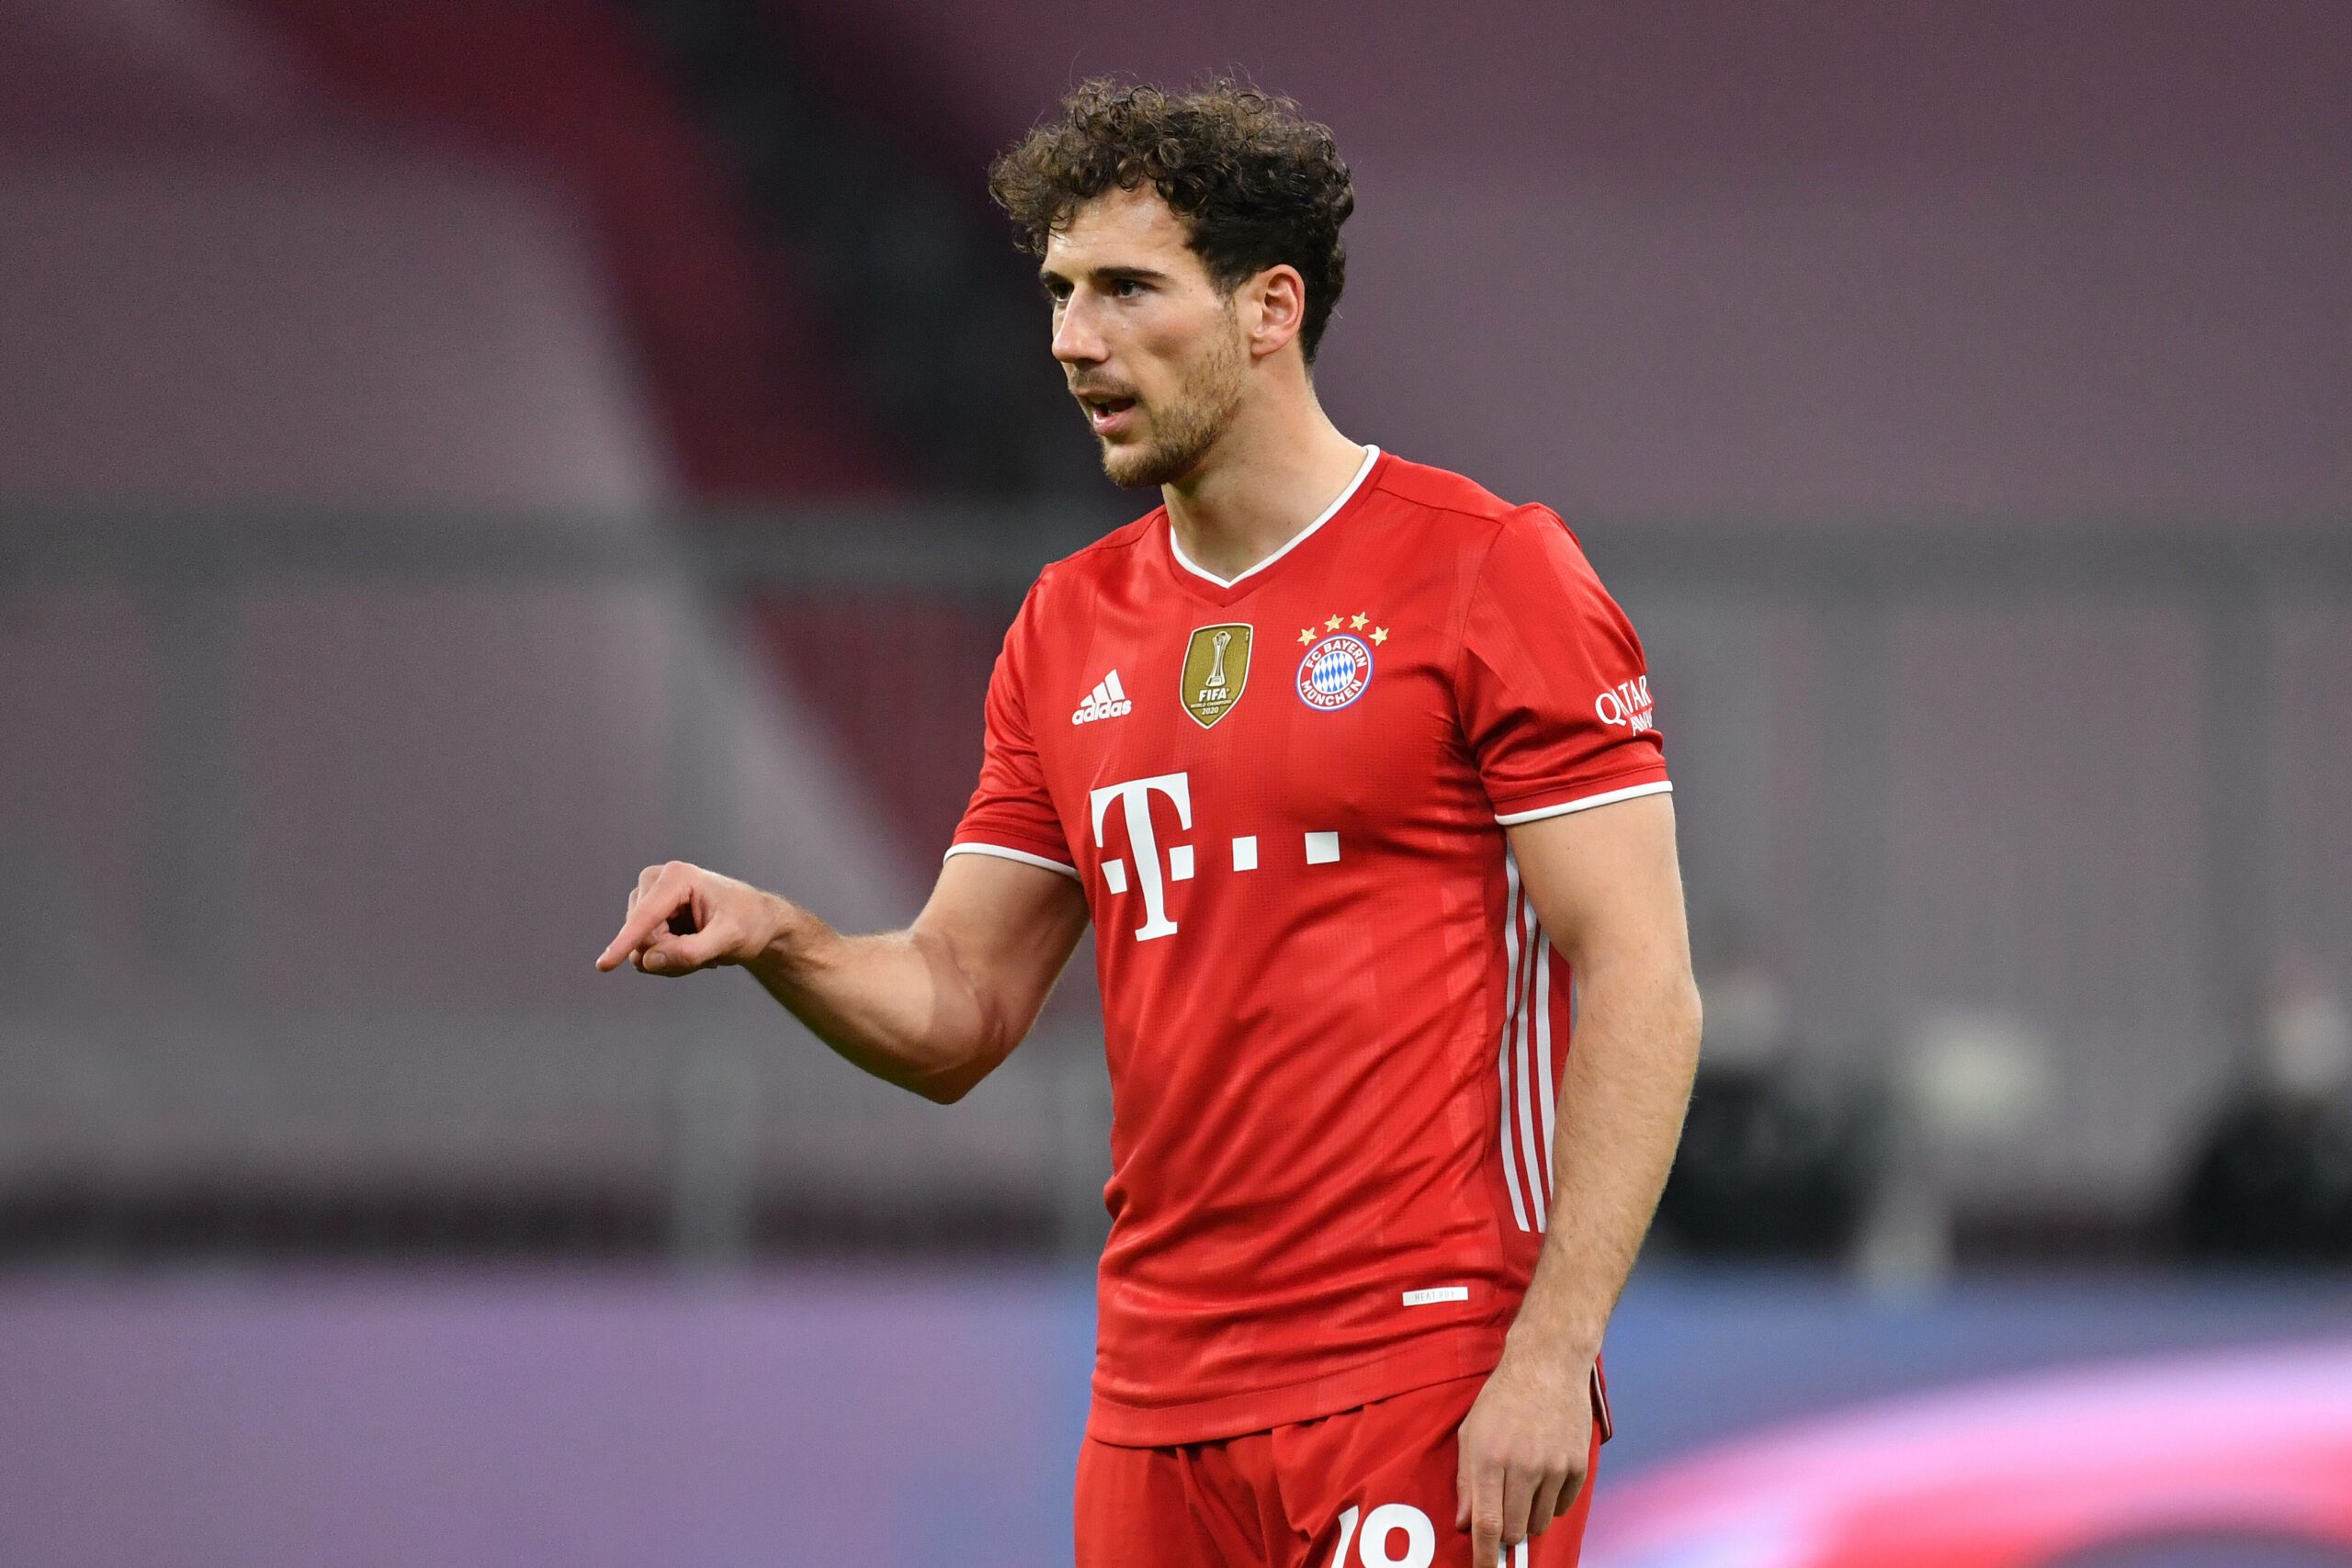 Medien: Die Bayern wollen noch vor der EM 2021 mit Goretzka verlängern -  Aktuelle FC Bayern News, Transfergerüchte, Hintergrundberichte uvm.